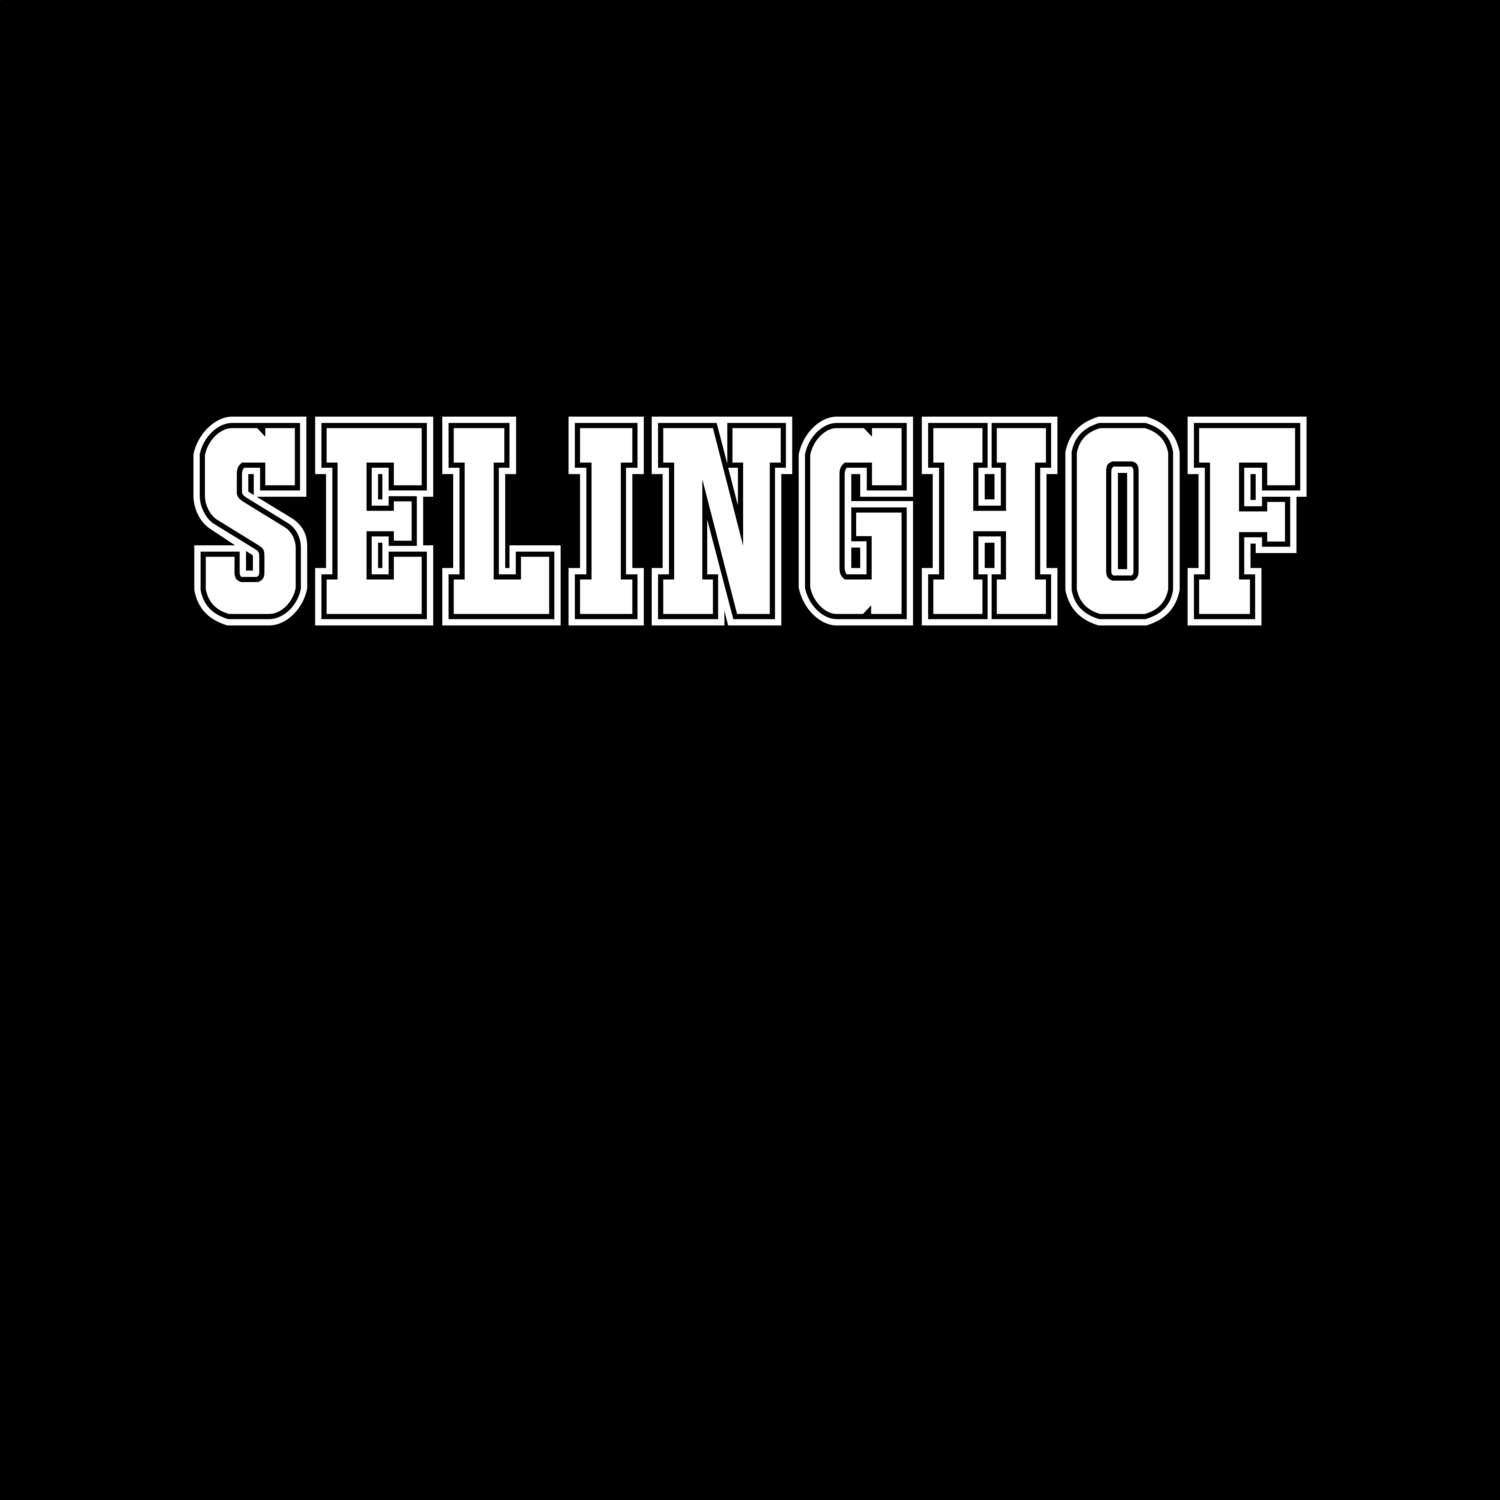 Selinghof T-Shirt »Classic«